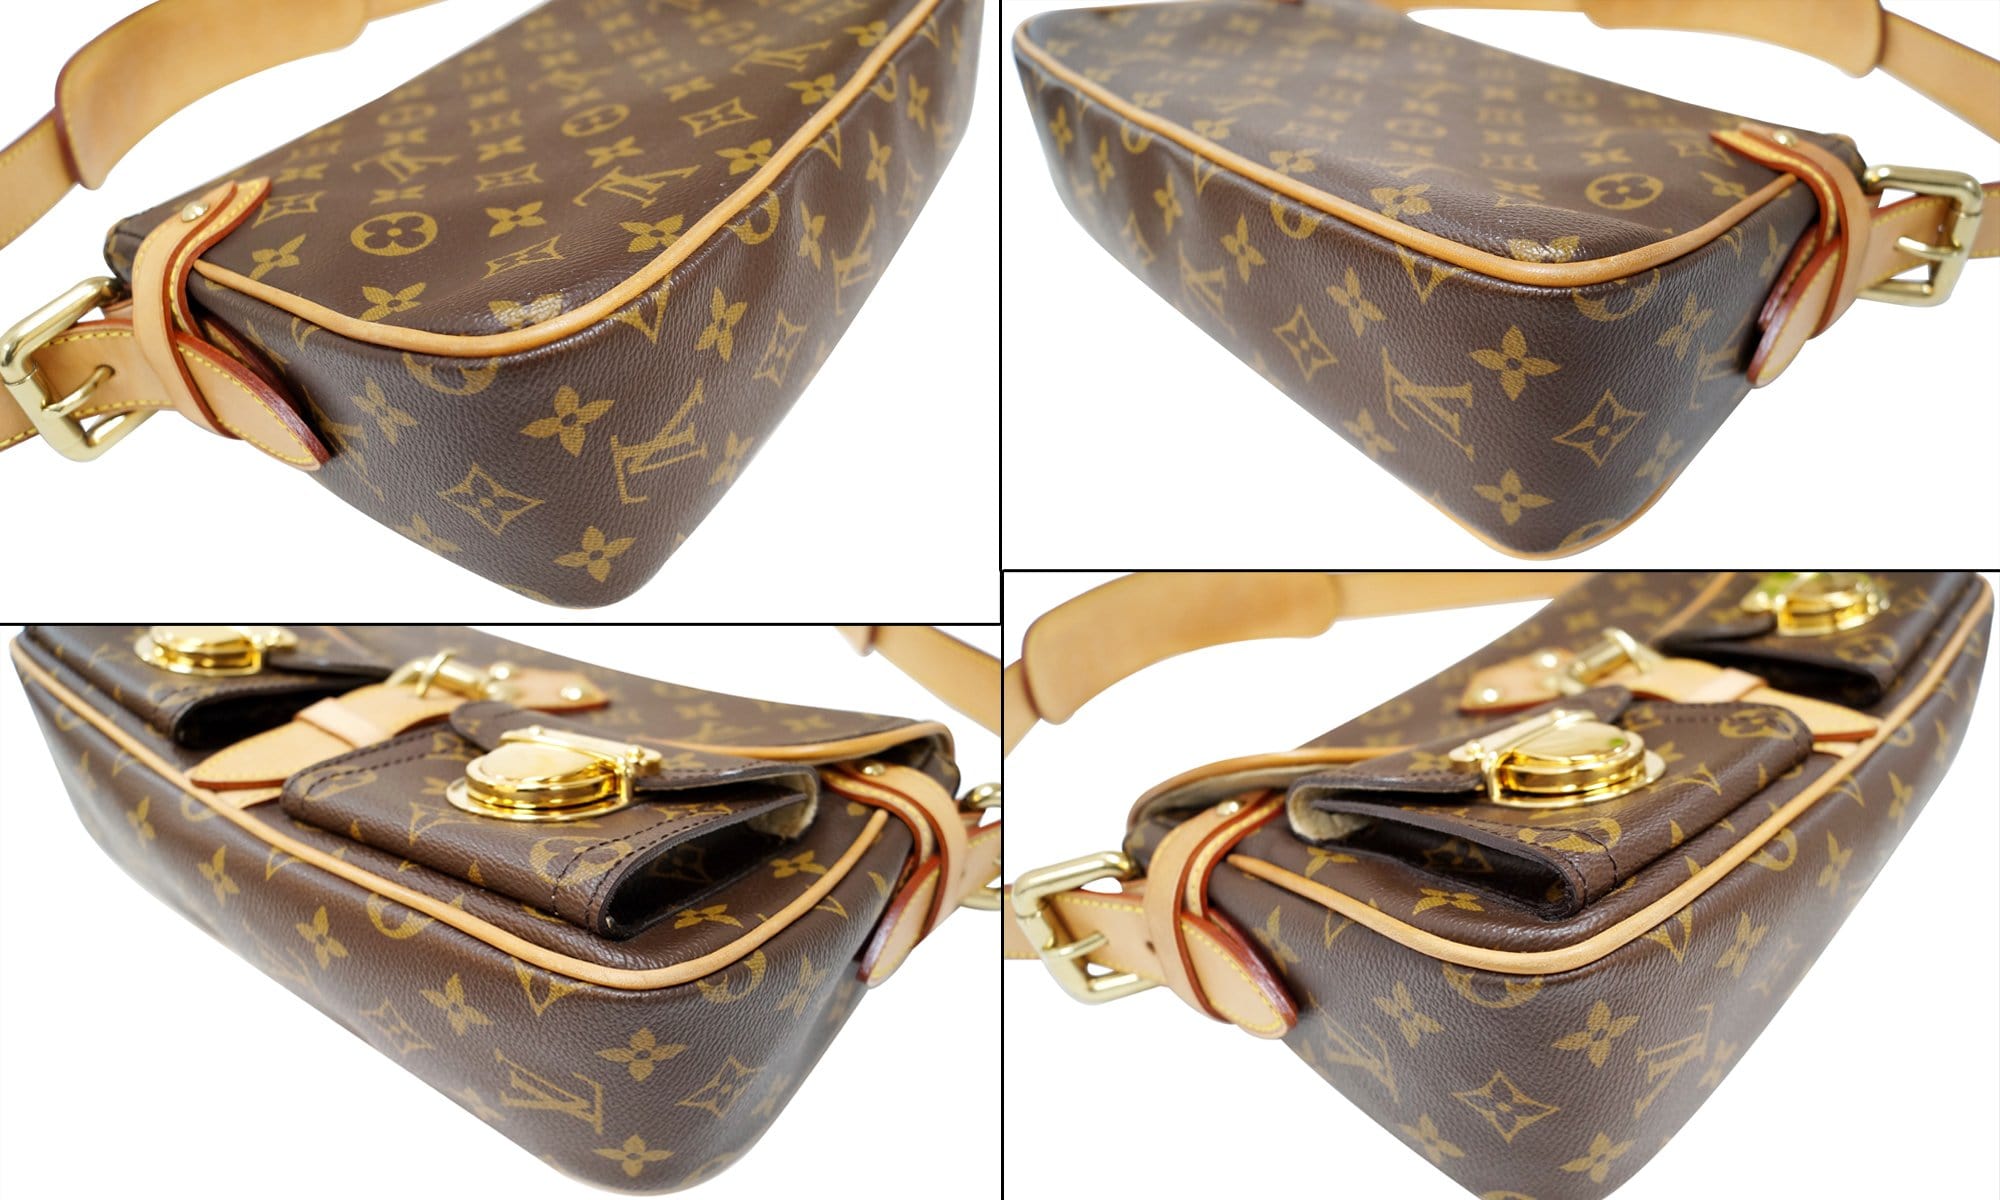 Louis Vuitton Monogram Canvas Hudson PM Shoulder Bag Handbag Pockets w/  Dust Bag